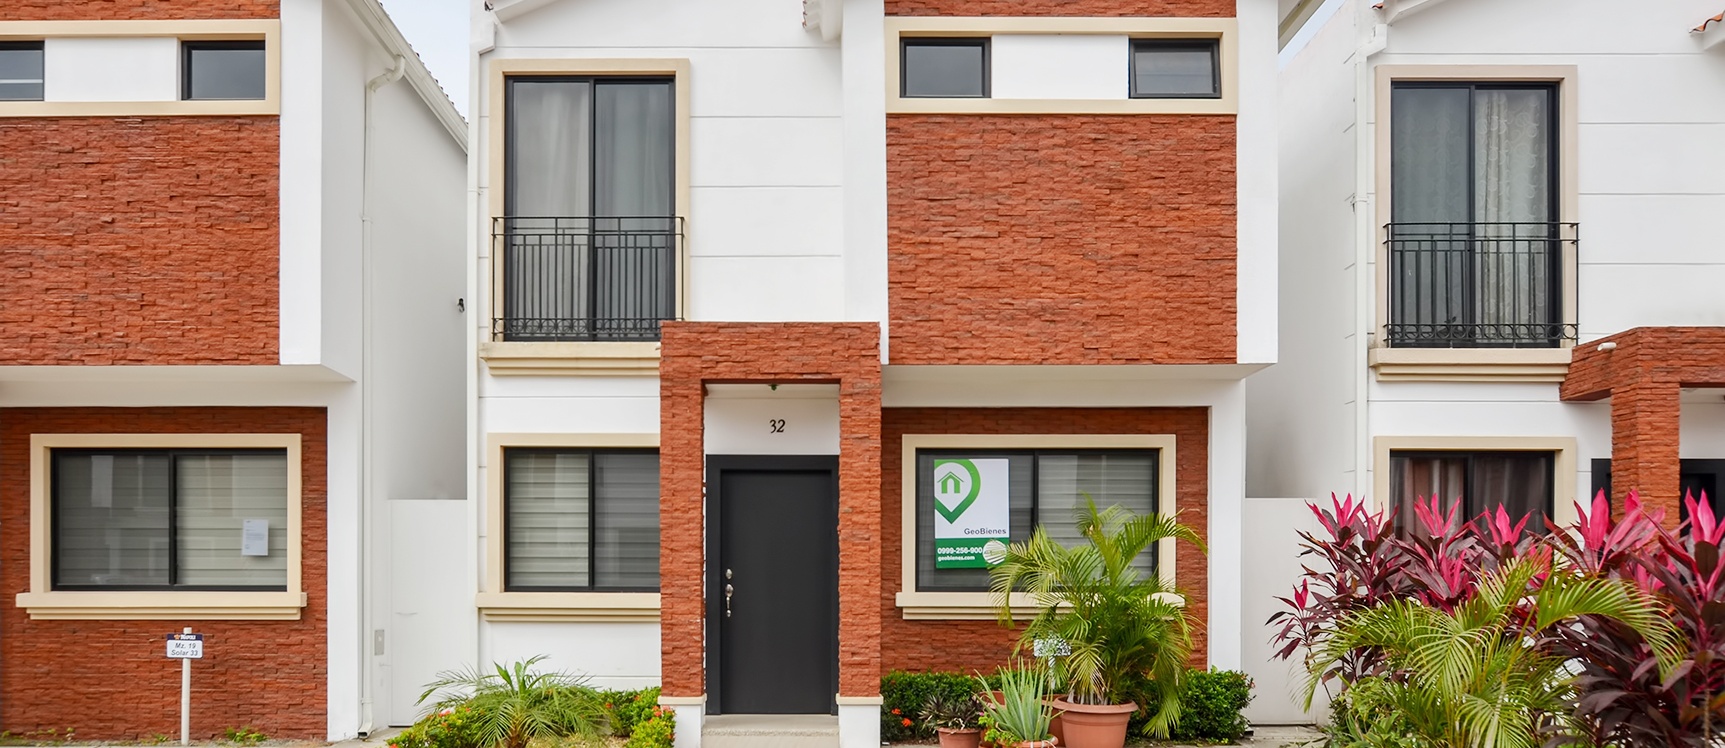 GeoBienes - Casa en venta en Urbanización Napoli sector Vía a Samborondón - Plusvalia Guayaquil Casas de venta y alquiler Inmobiliaria Ecuador